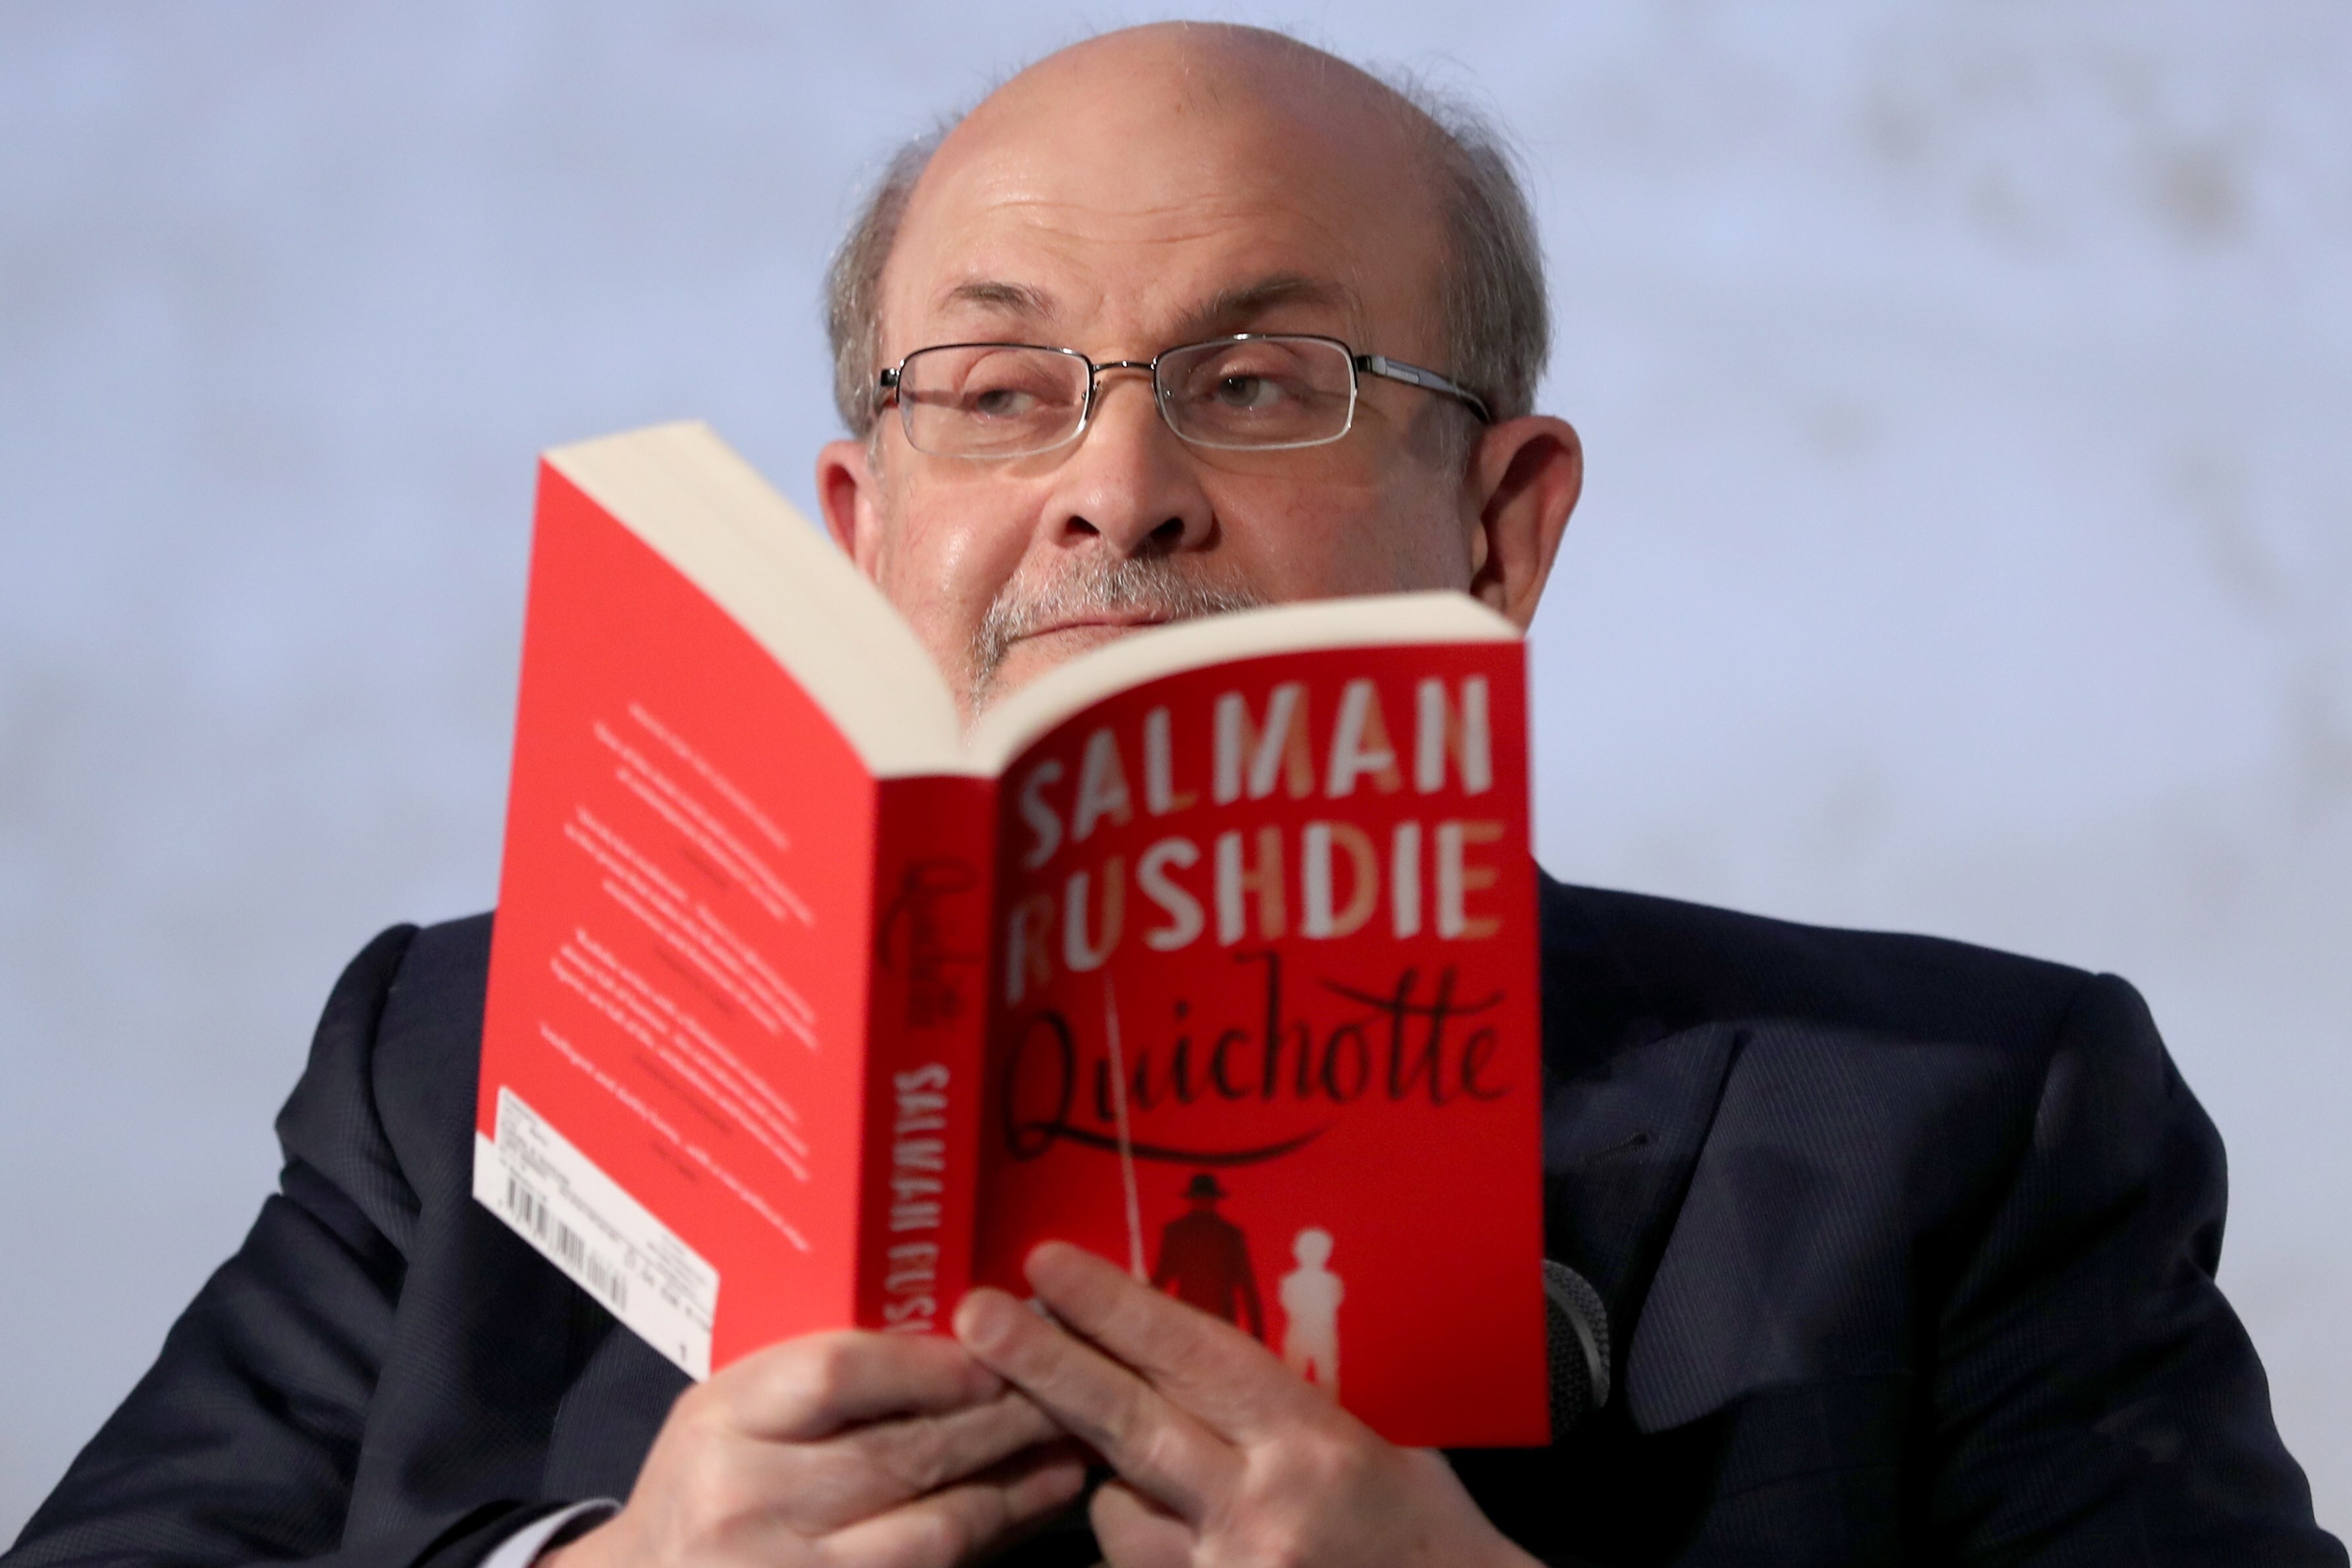 Con Salman Rushdie y la libertad de expresión, aunque ofenda